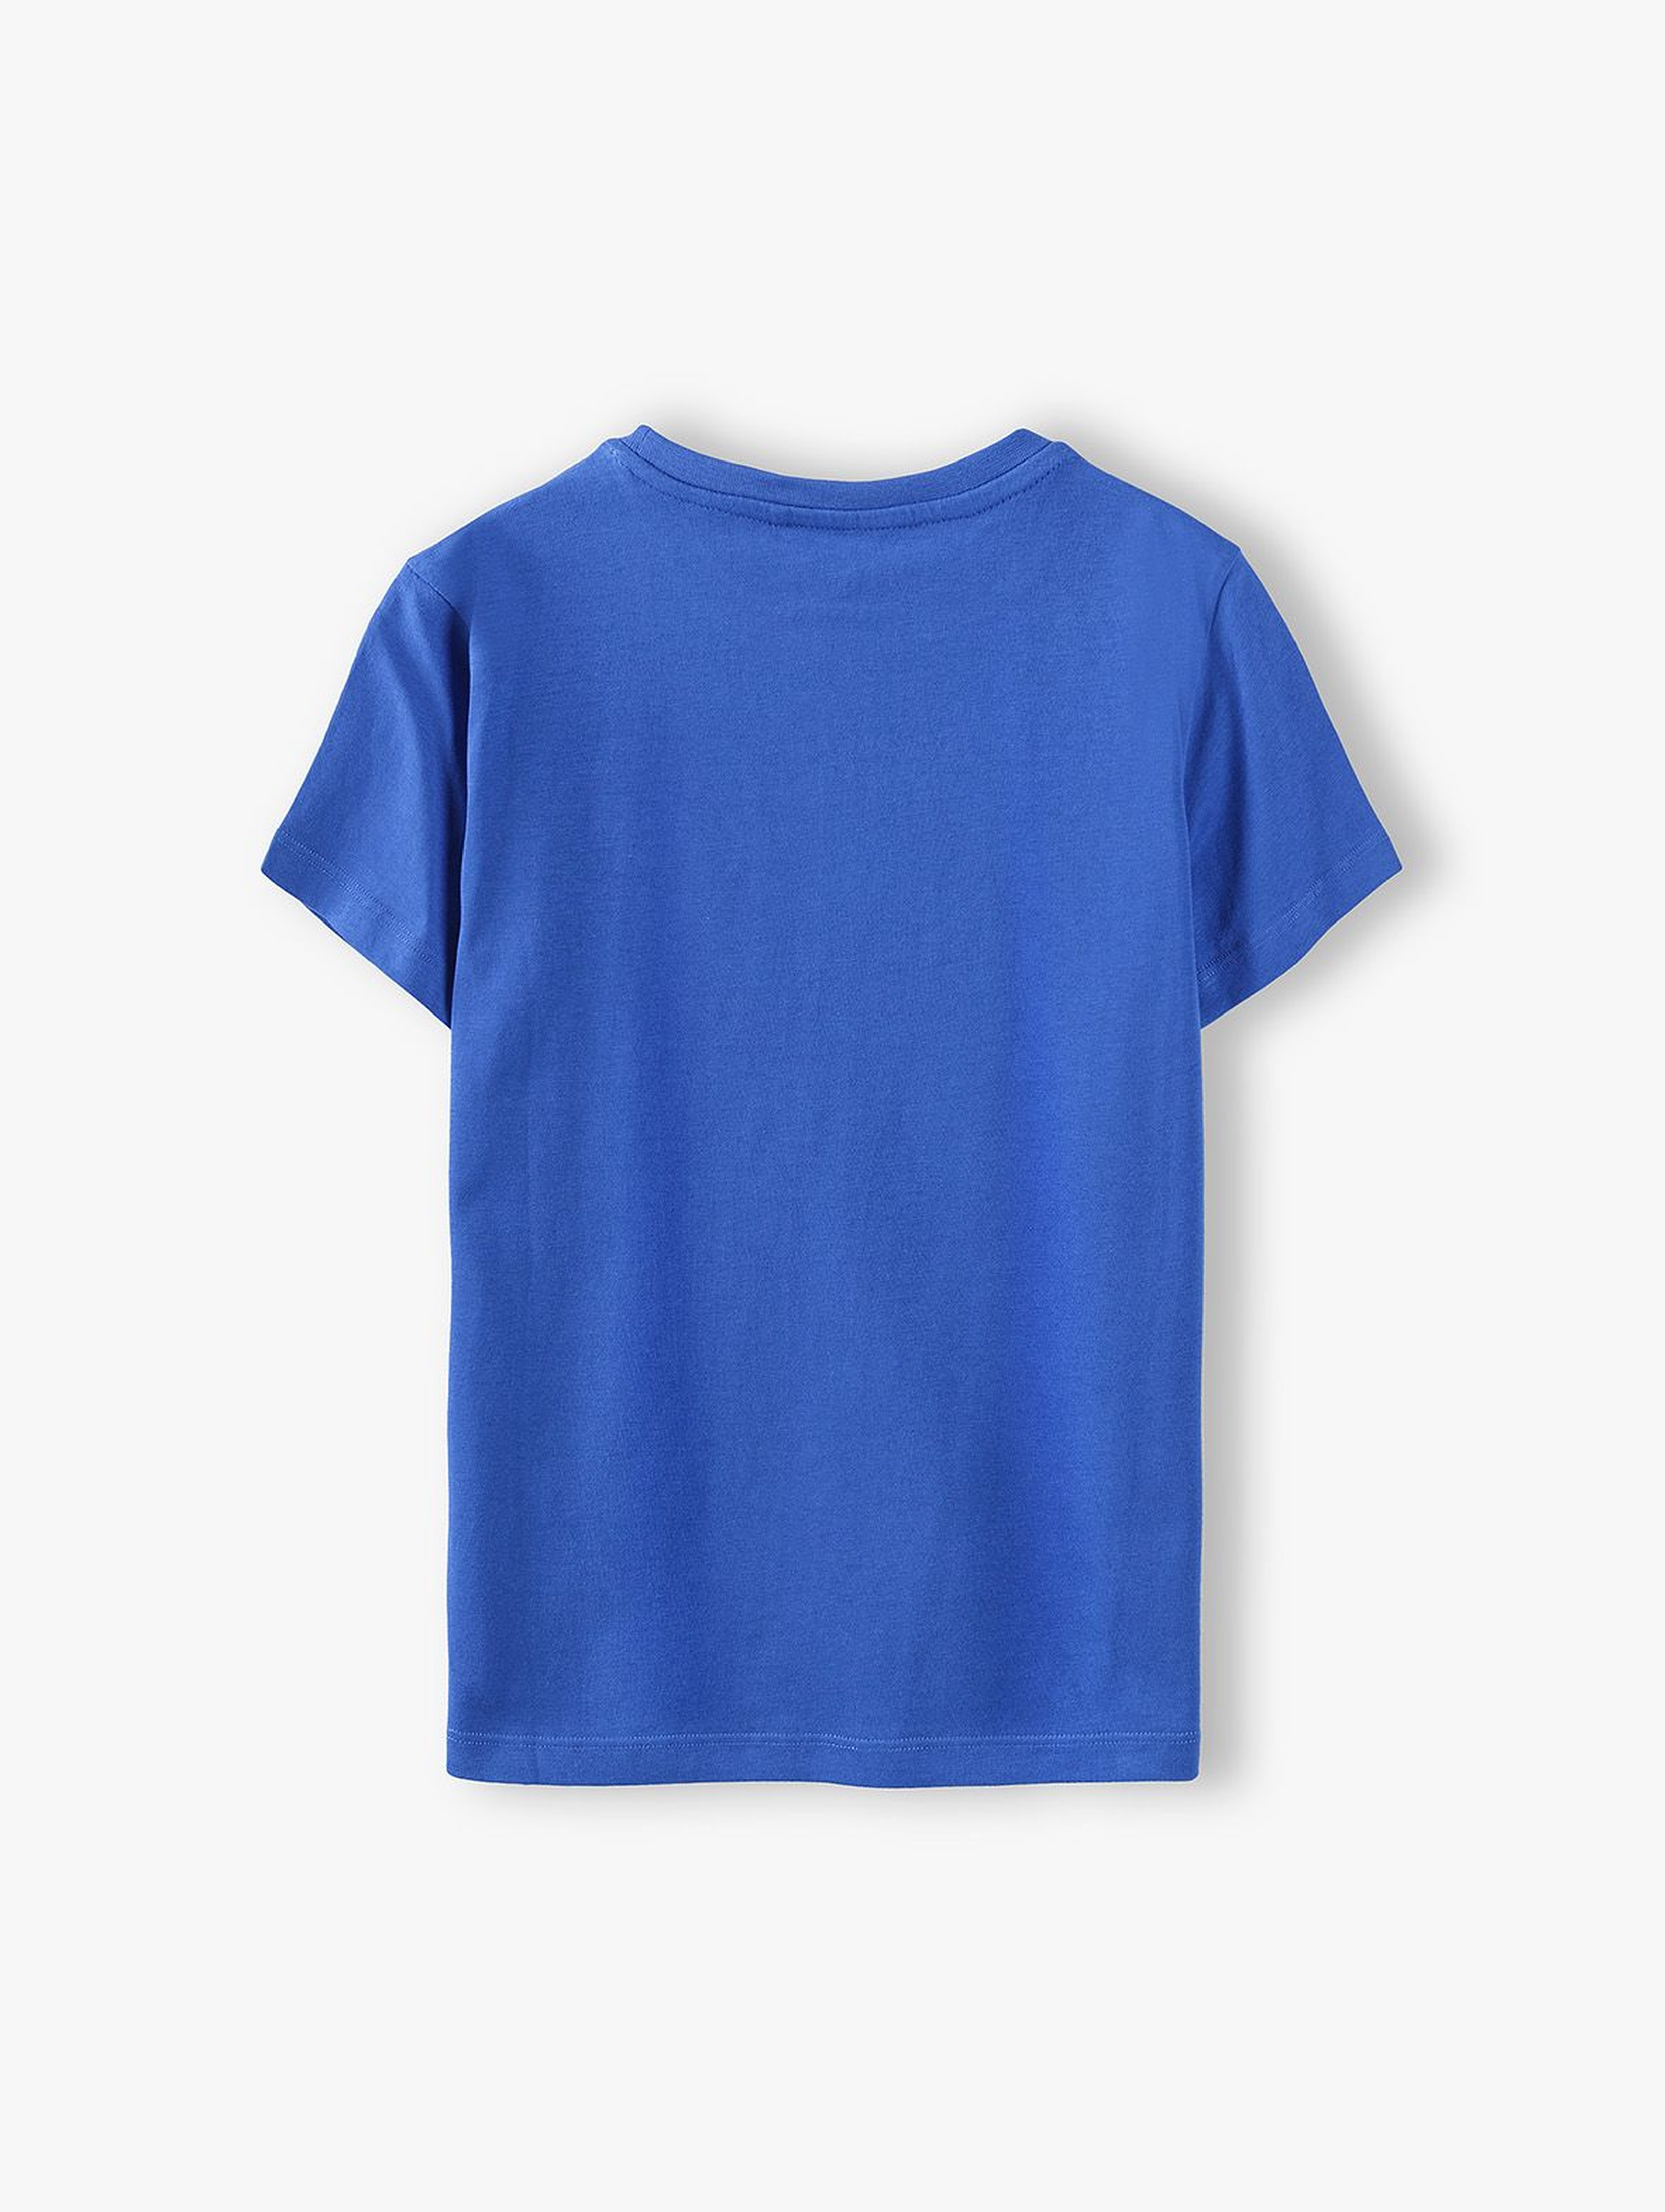 T-shirt chłopięcy w kolorze niebieskim